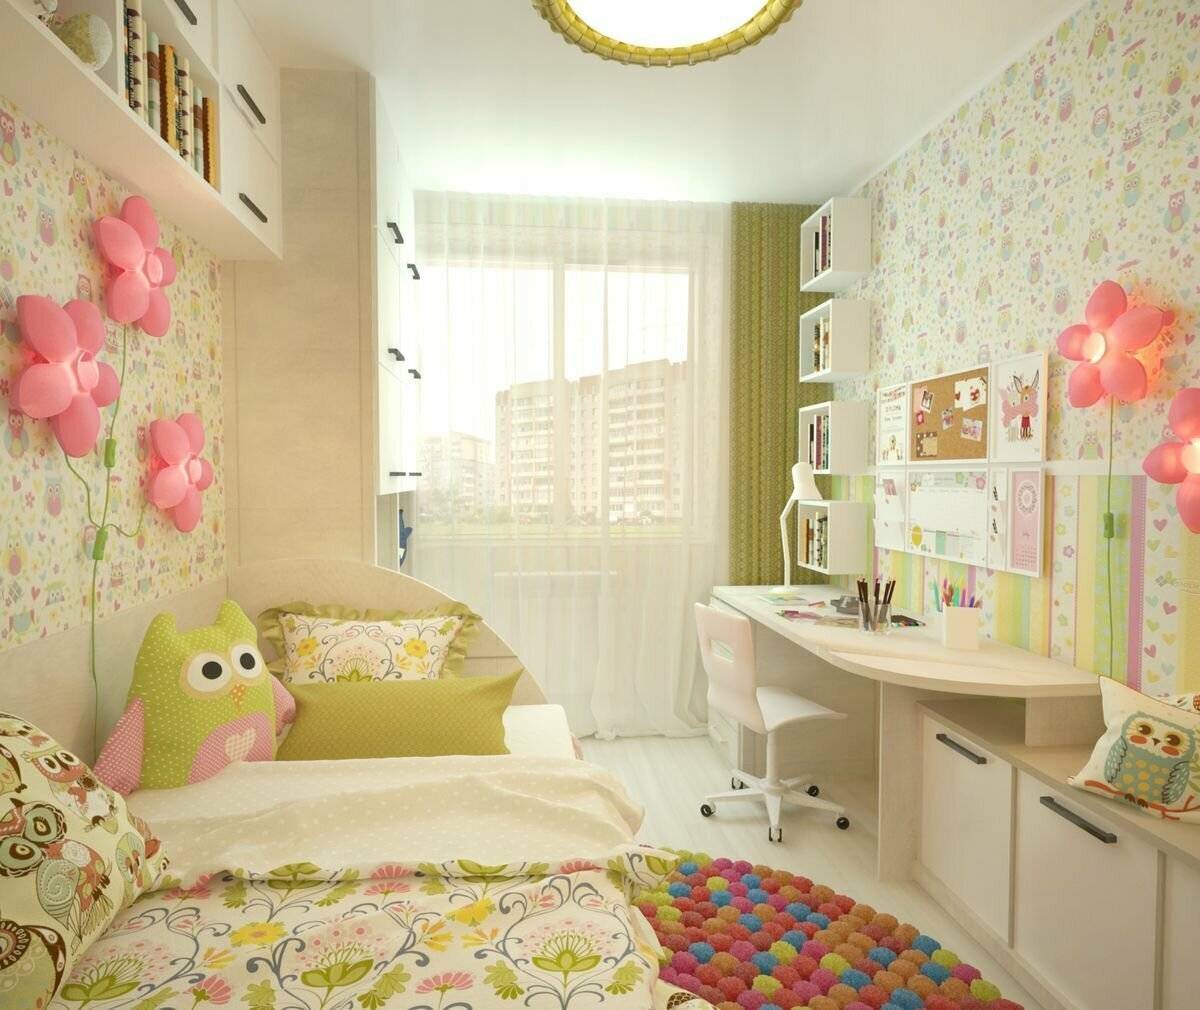 Обои в детскую комнату - 110 фото лучших идей дизайна. варианты поклейки и комбинирования.